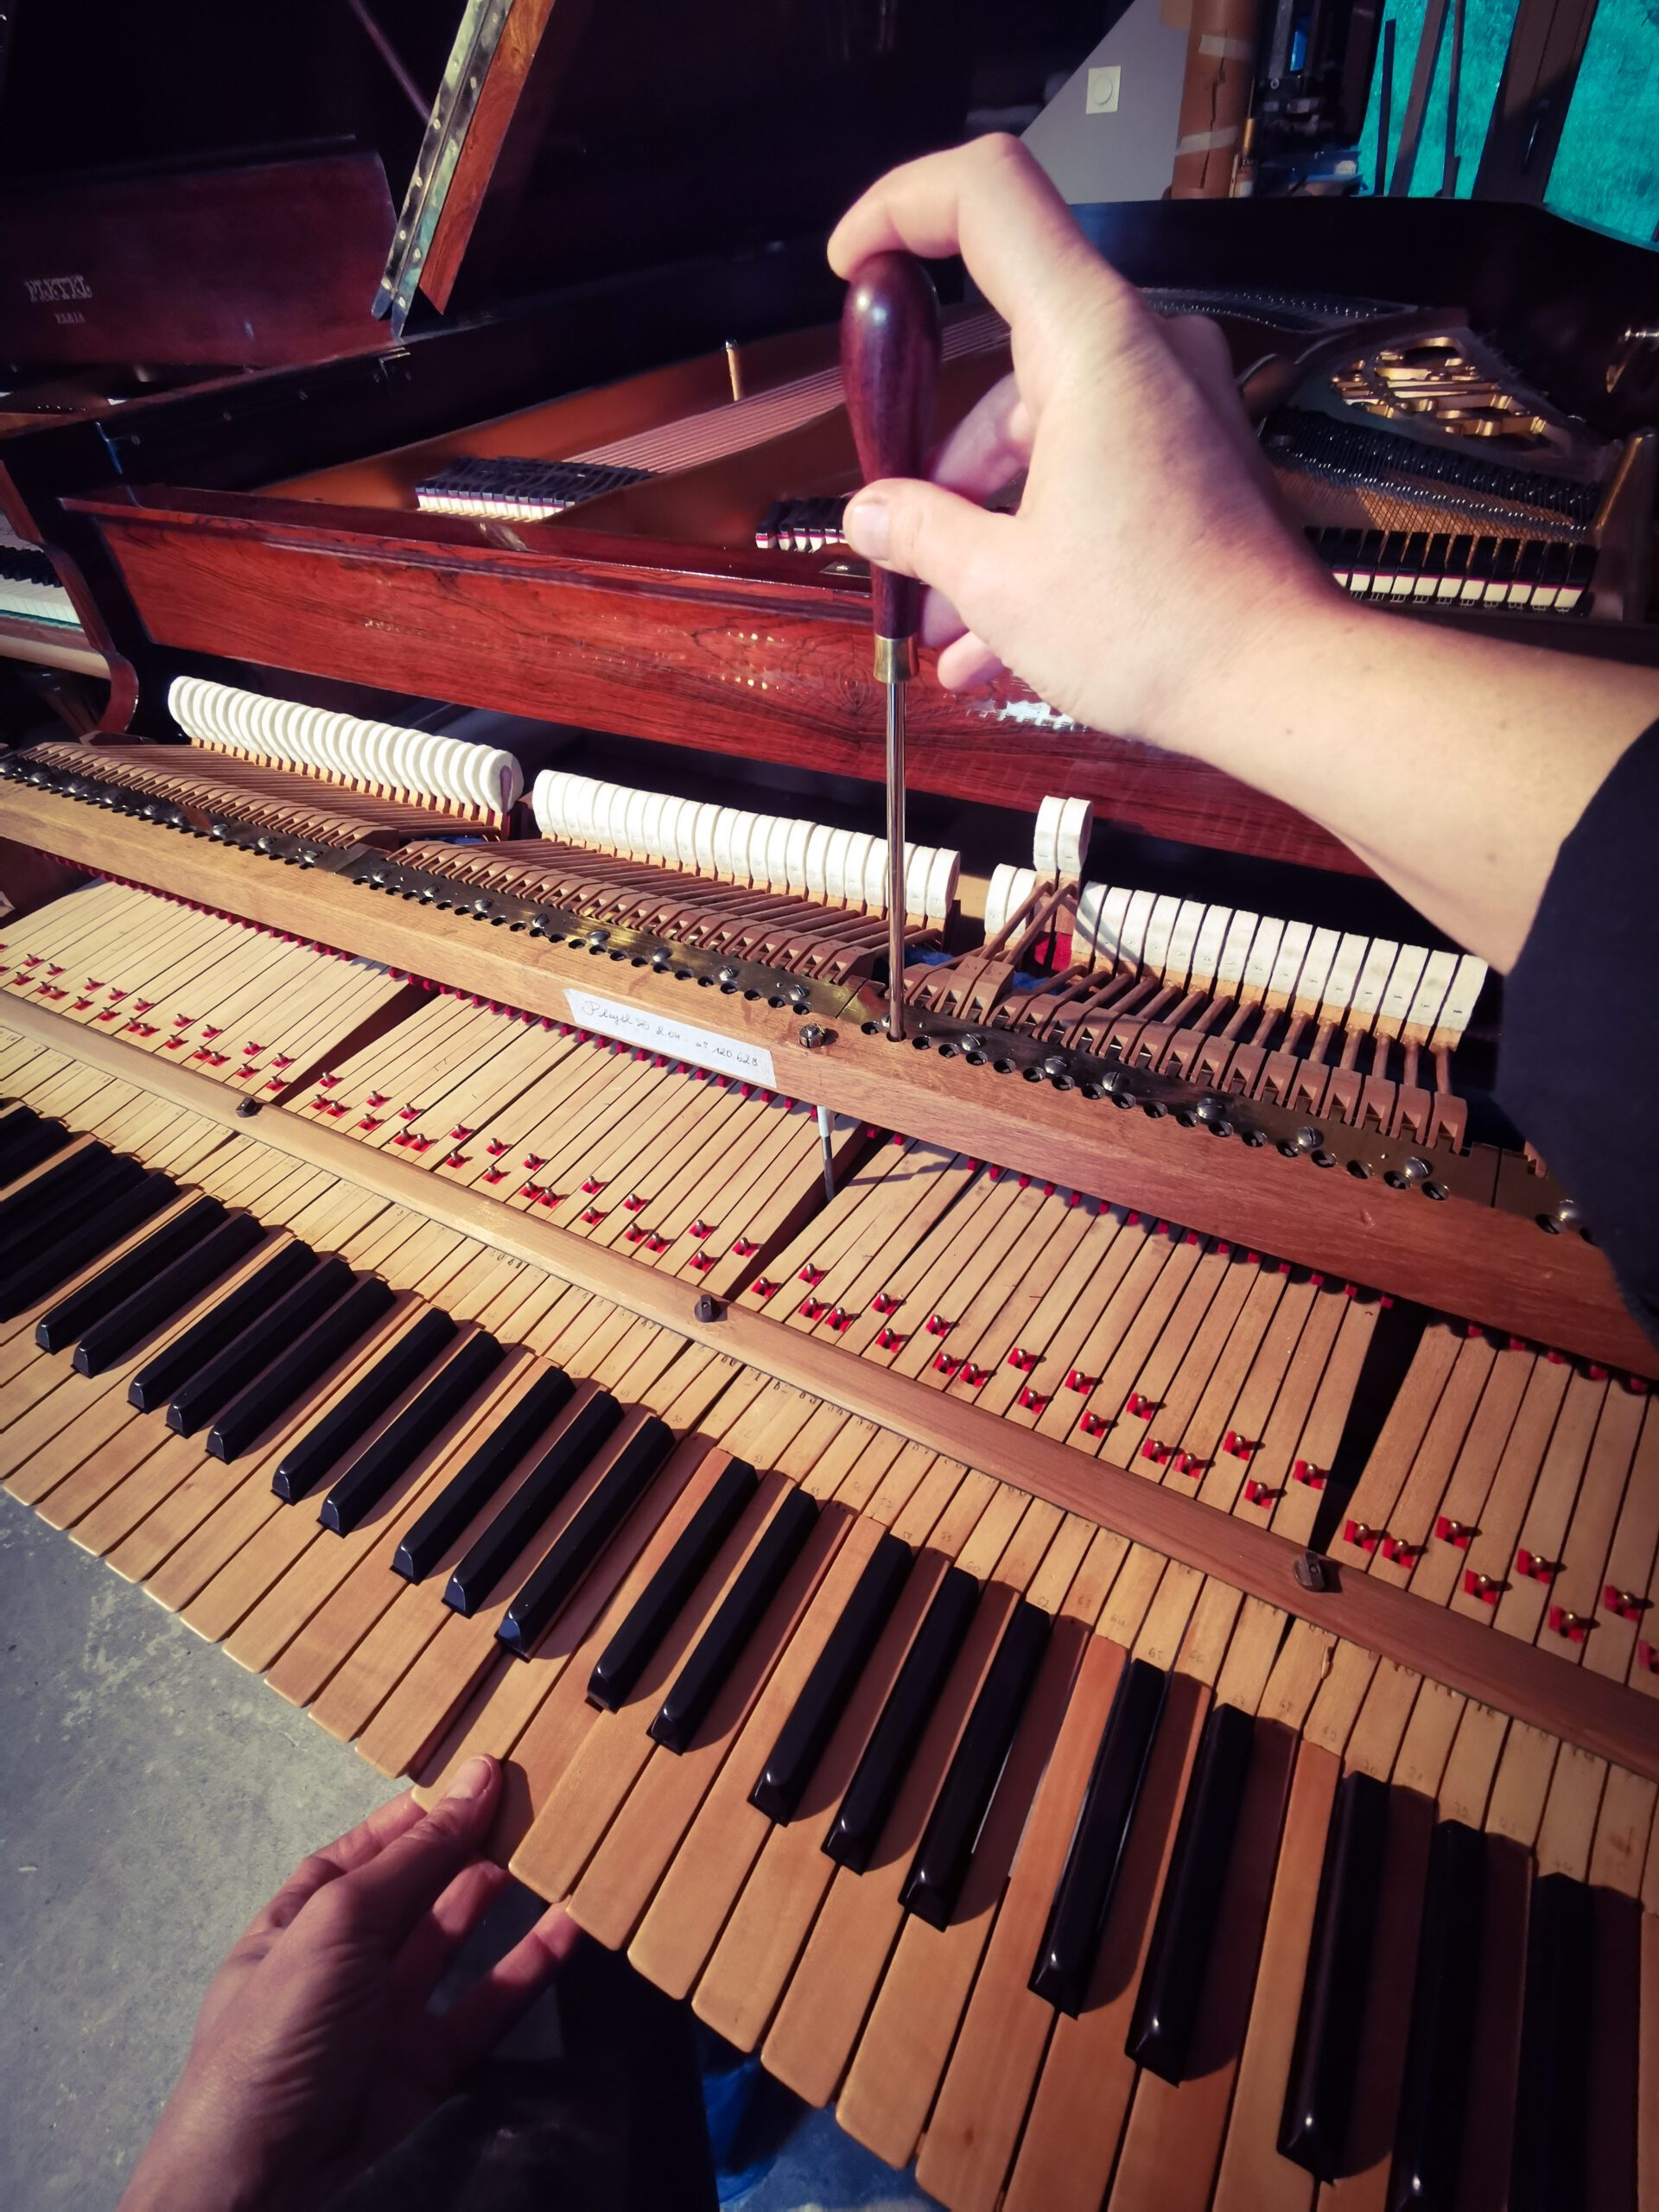 réglage de la mécanique à peignes avec clavier en poirier de piano demi queue Pleyel 2m04 de 1899 dans atelier de restauration de pianos de Marion Lainé en Savoie